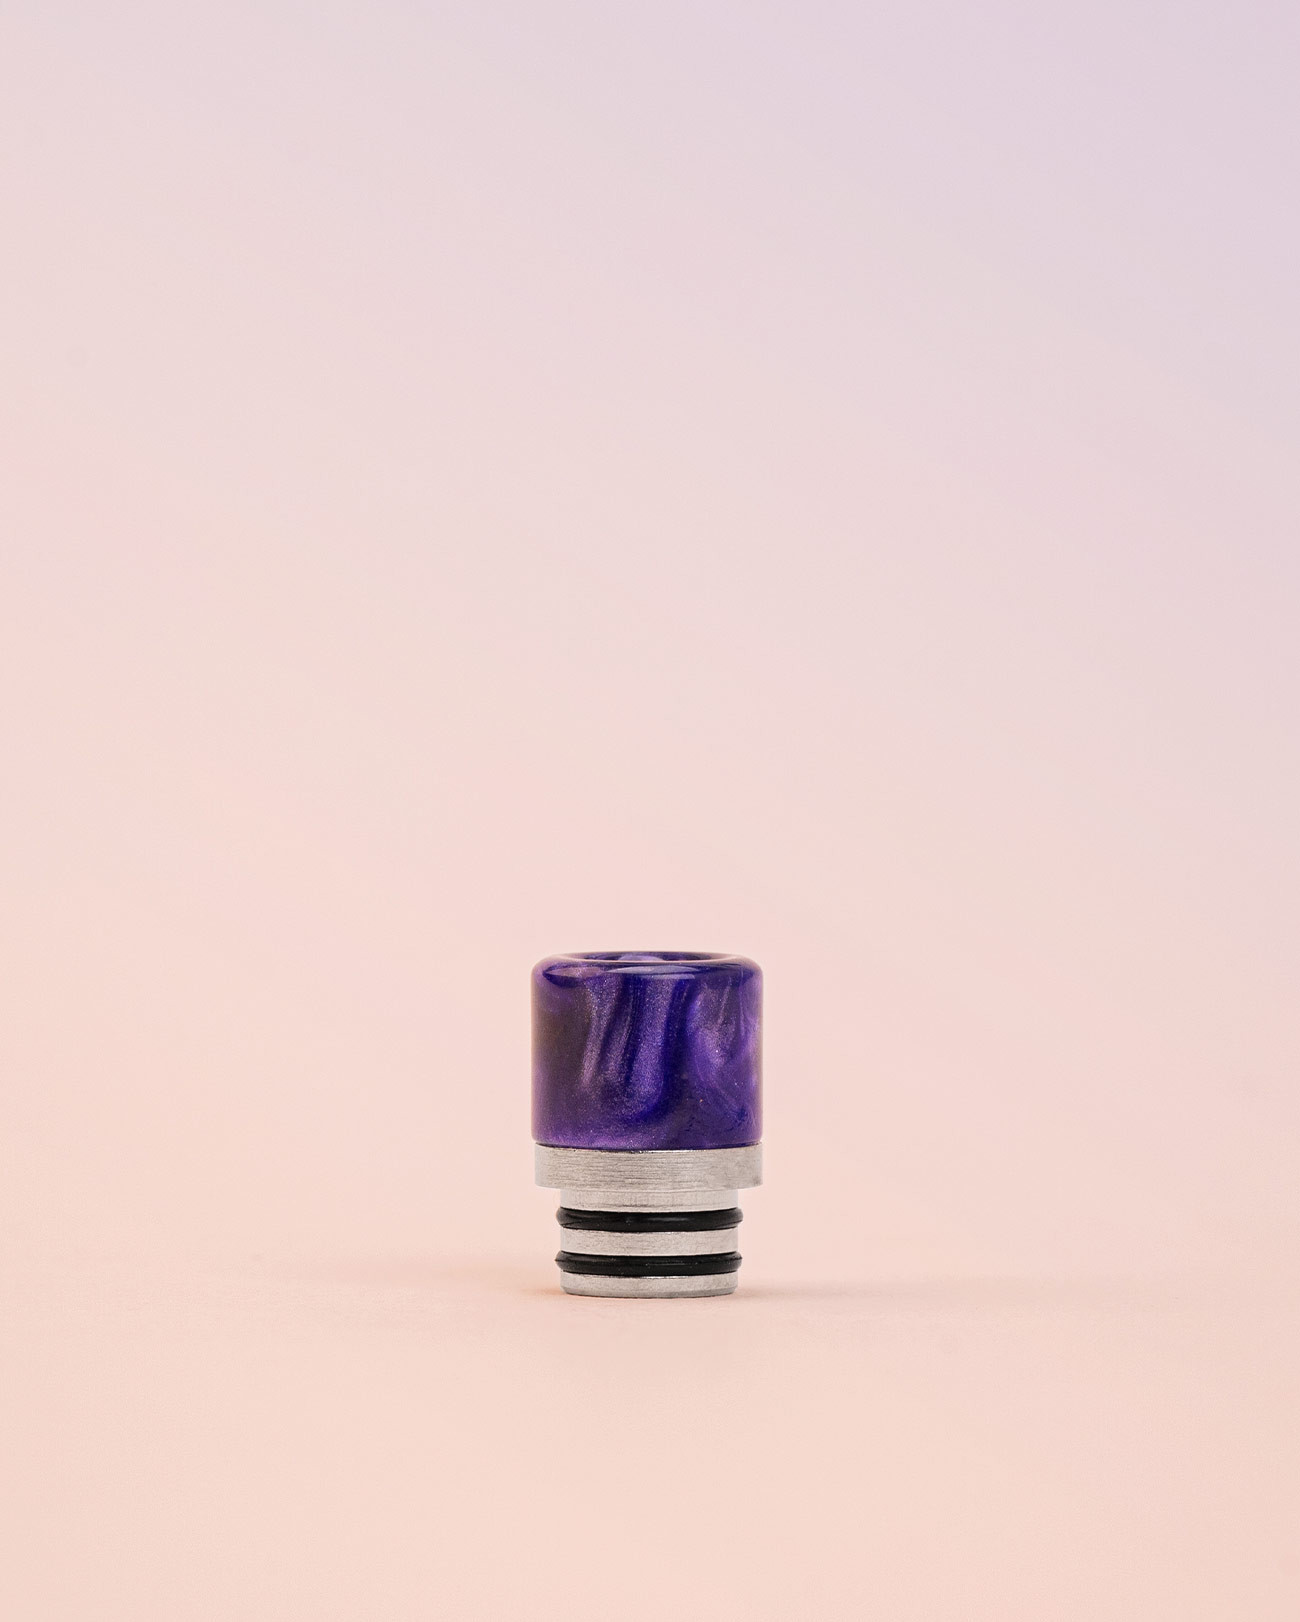 Embout pour cigarette électronique Drip tip 510 PVM0014 Pimp My Vape violet paillette purple